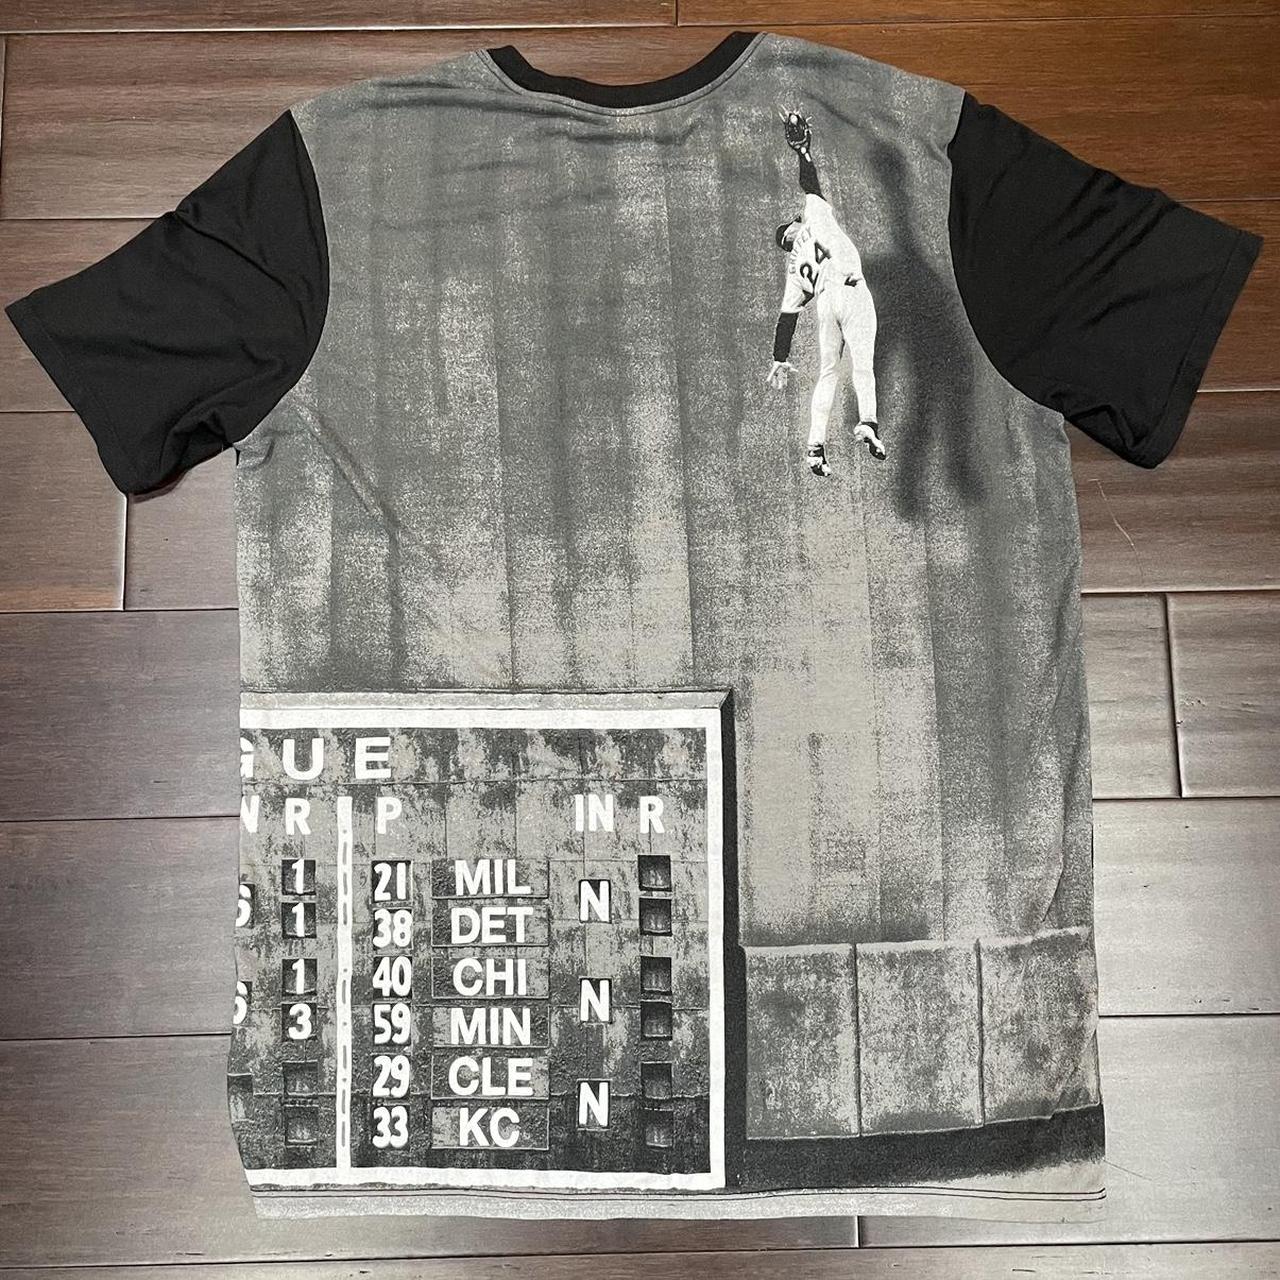 Nike Men's T-Shirt - Black - L